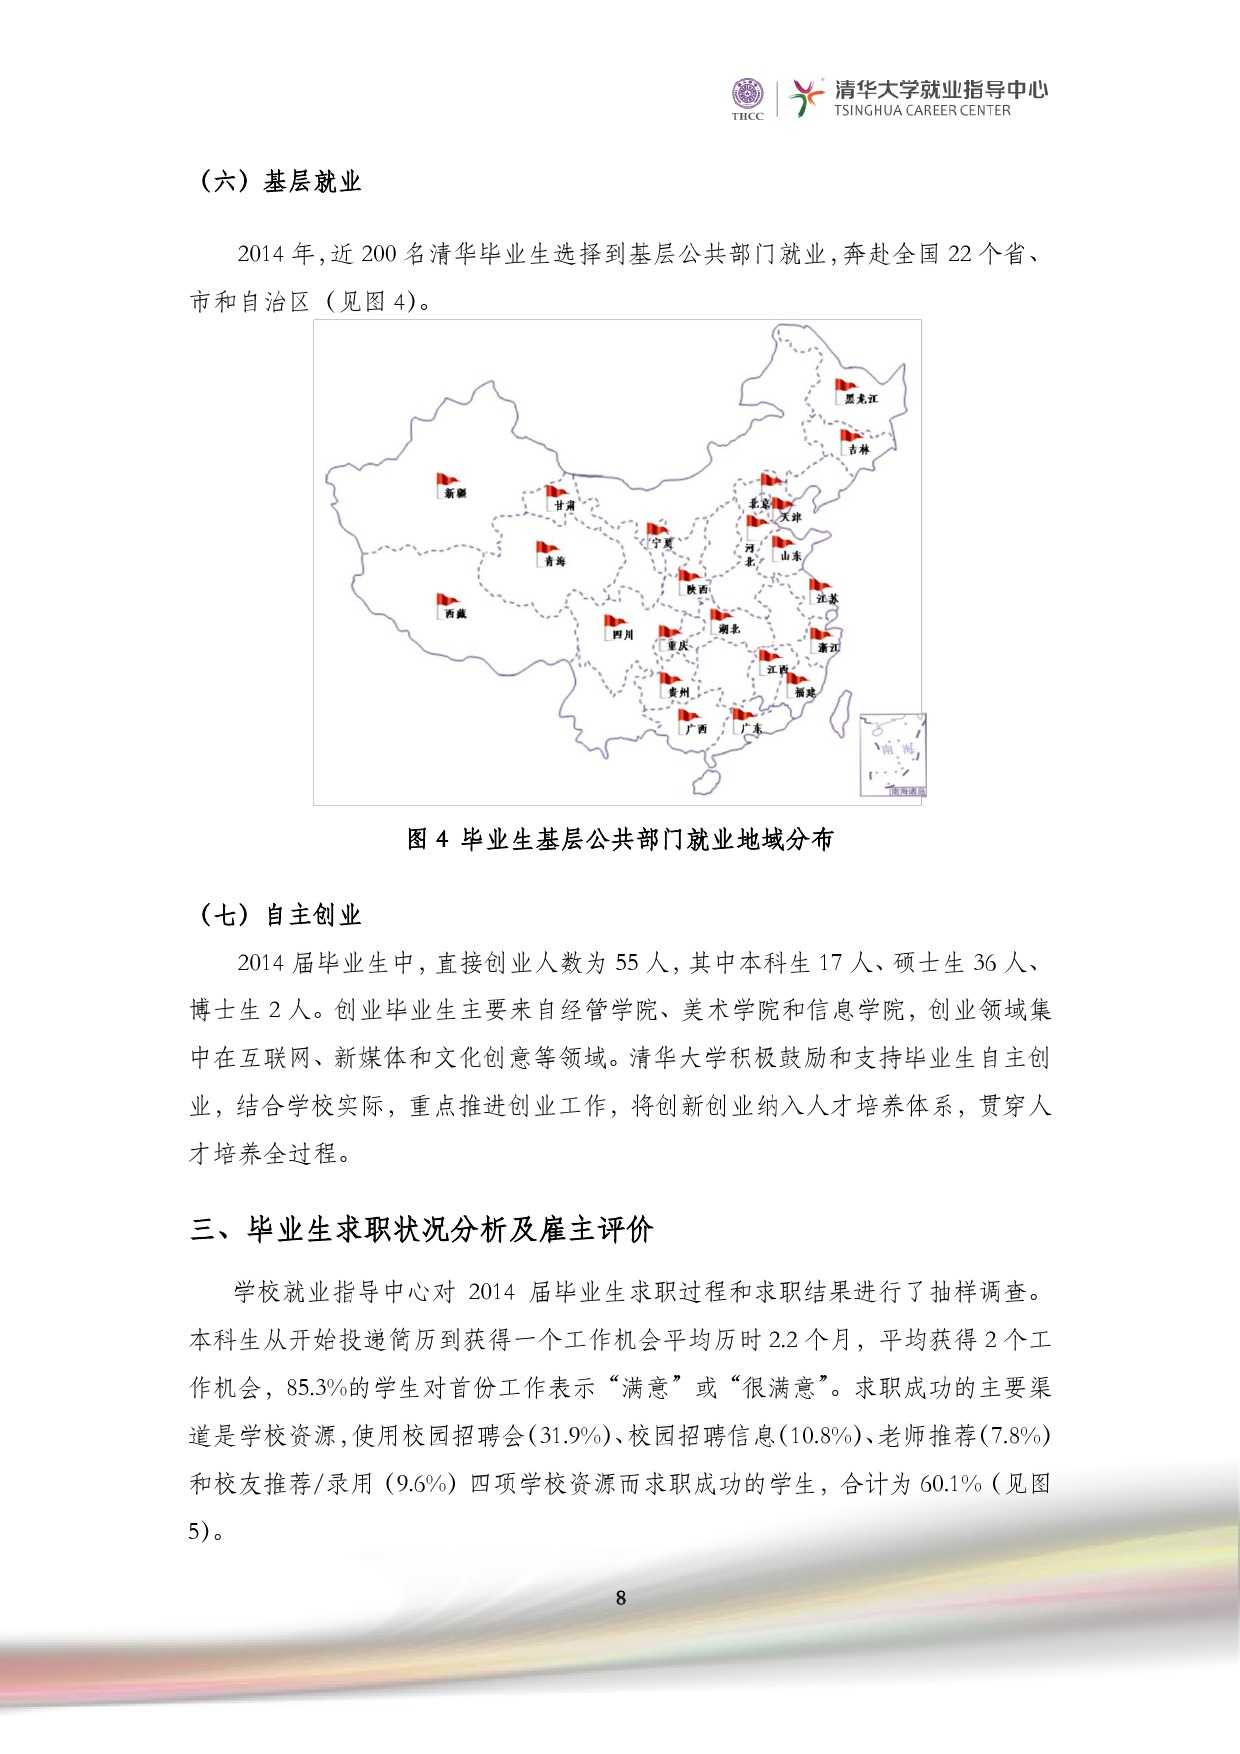 清華大學2014 年畢業生就業質量報告_000010